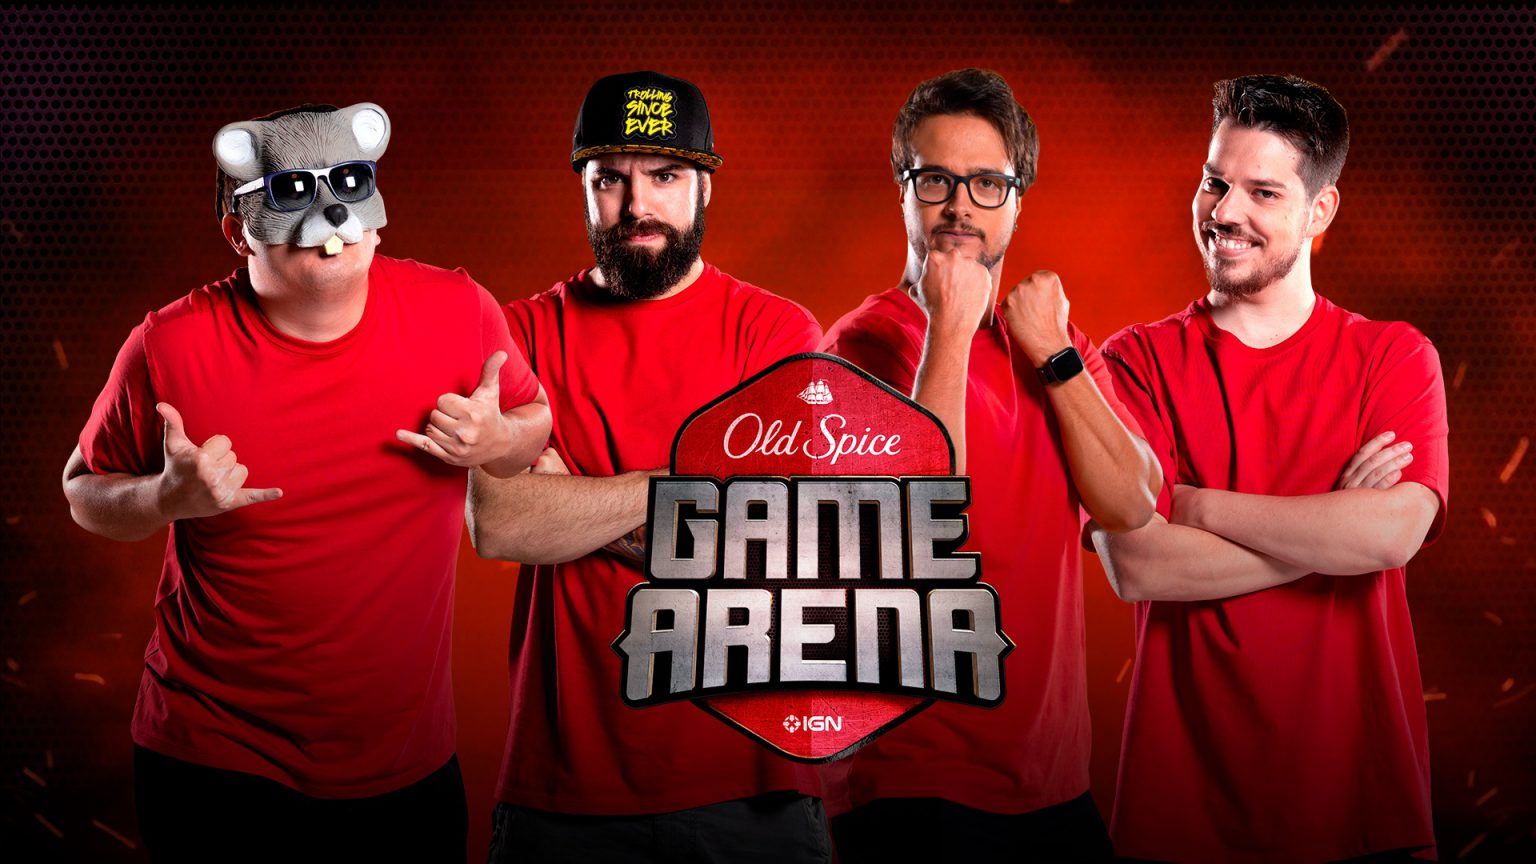 Torneio Old Spice Game Arena traz 4 influenciadores